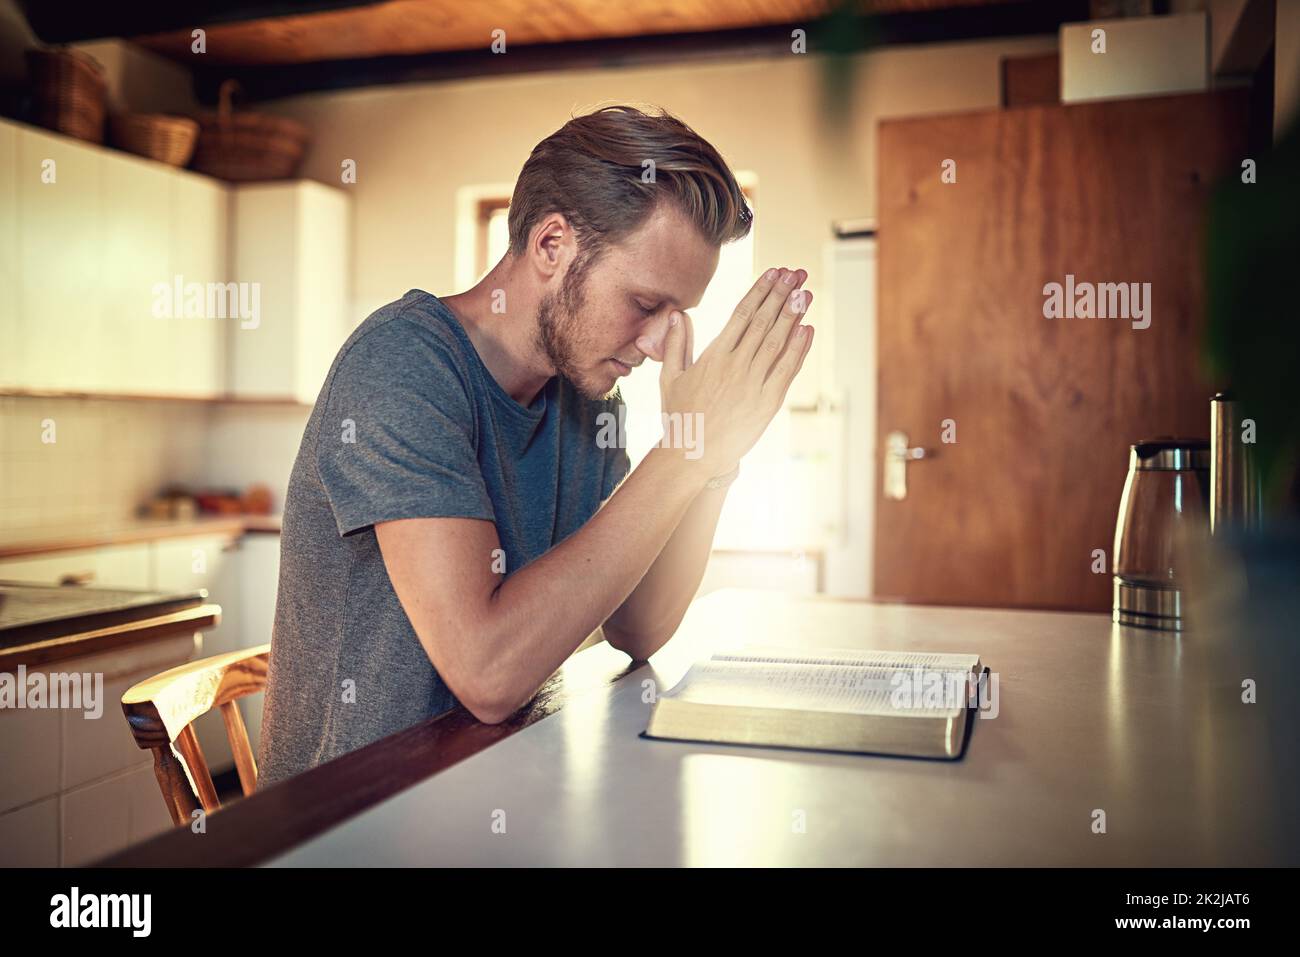 Attraverso le sue devozioni quotidiane. Scatto di un giovane devoto che stringe le mani in preghiera sopra una Bibbia aperta. Foto Stock